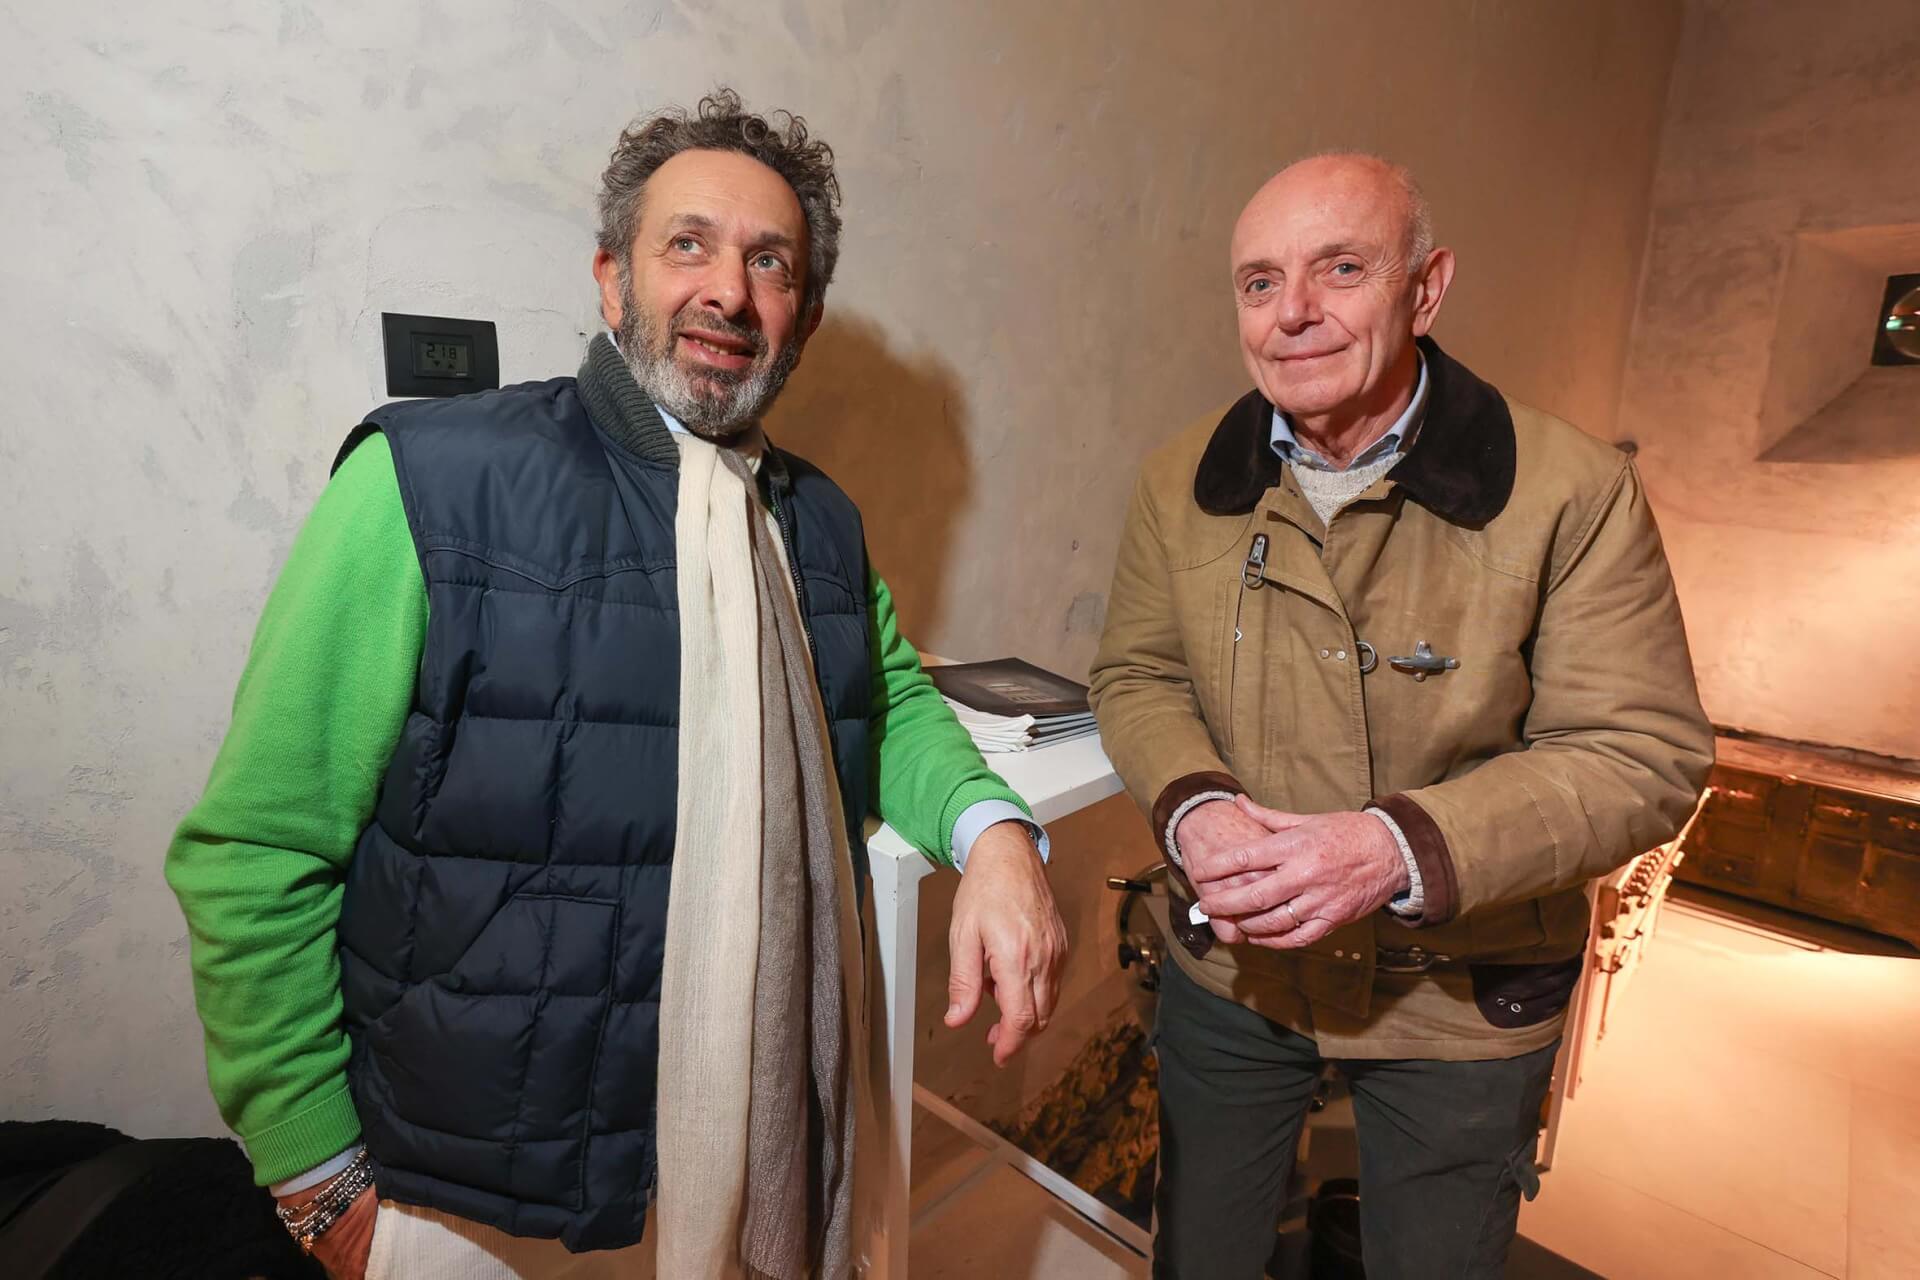 Umberto Carbone e Riccardo Morini

